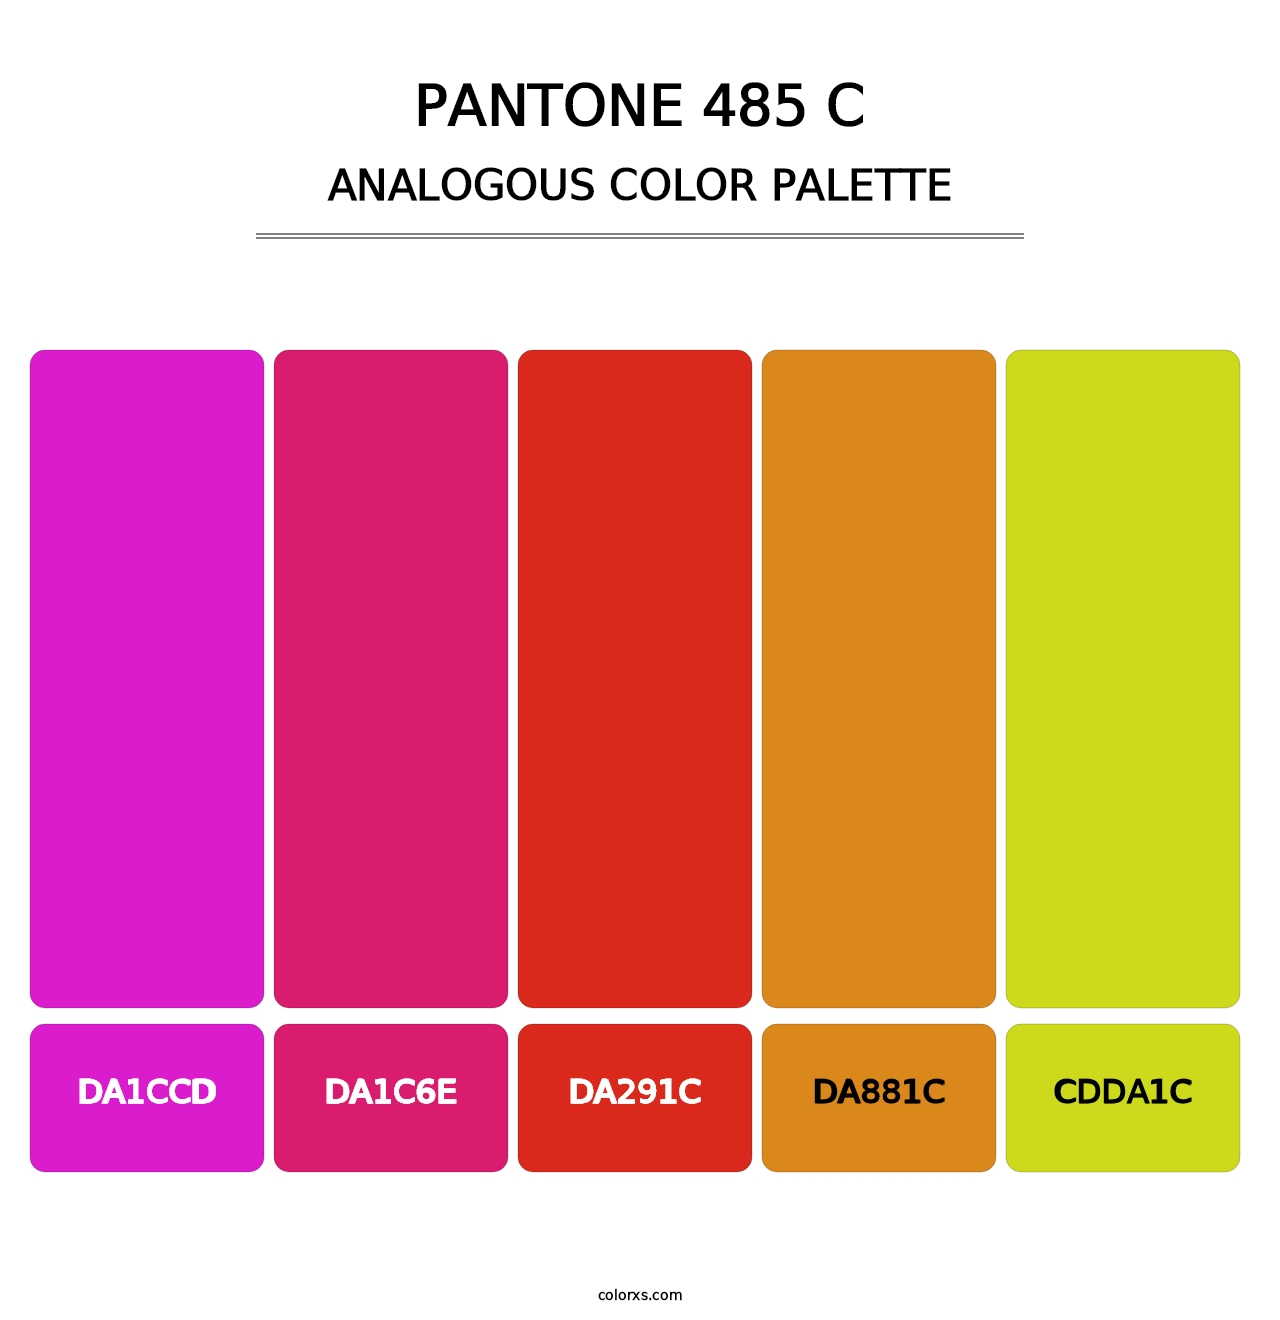 PANTONE 485 C - Analogous Color Palette